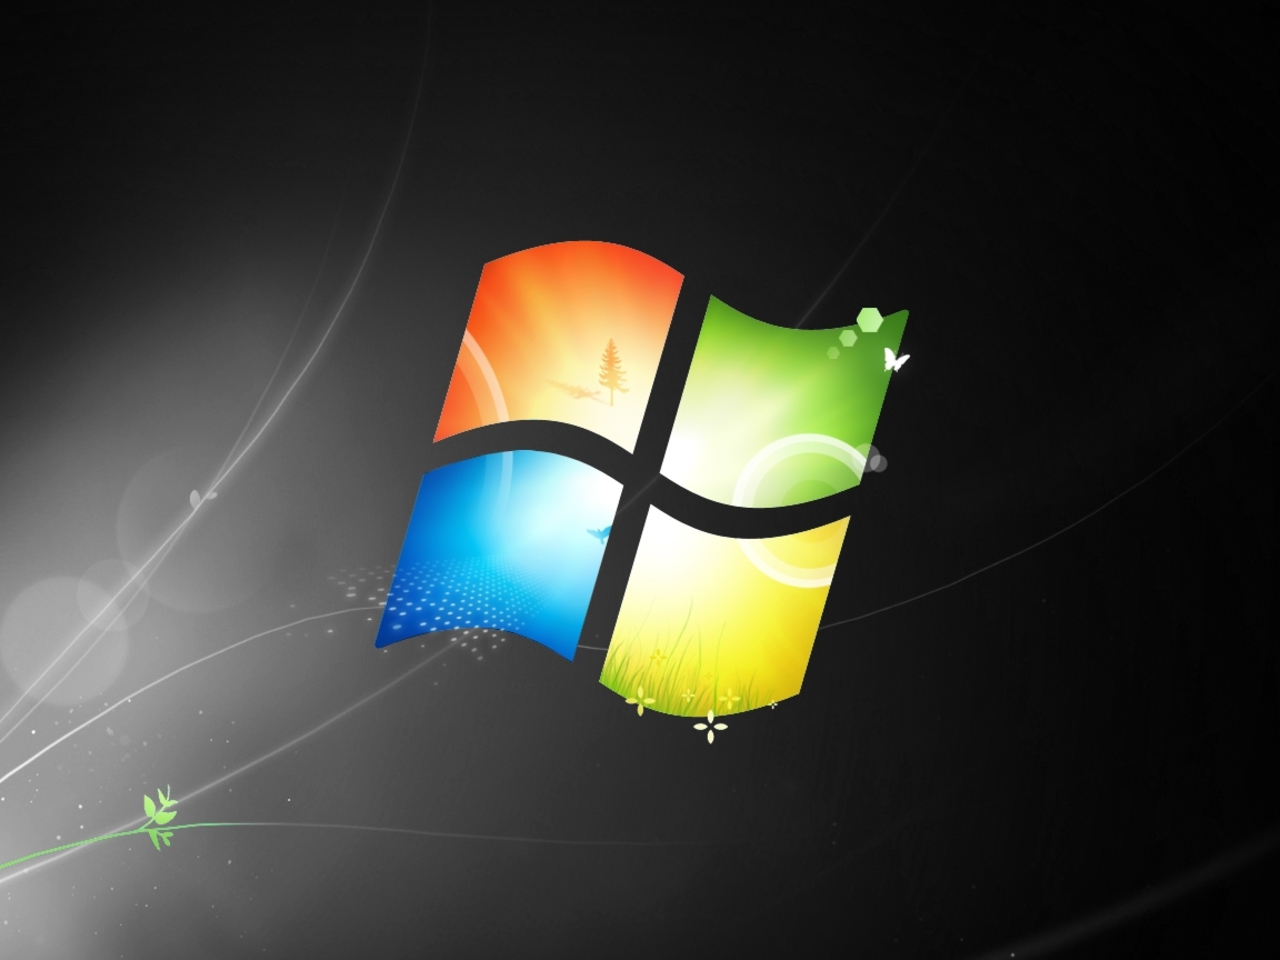 thèmes de fond d'écran windows 8.1,lumière,graphique,conception graphique,animation,système opérateur